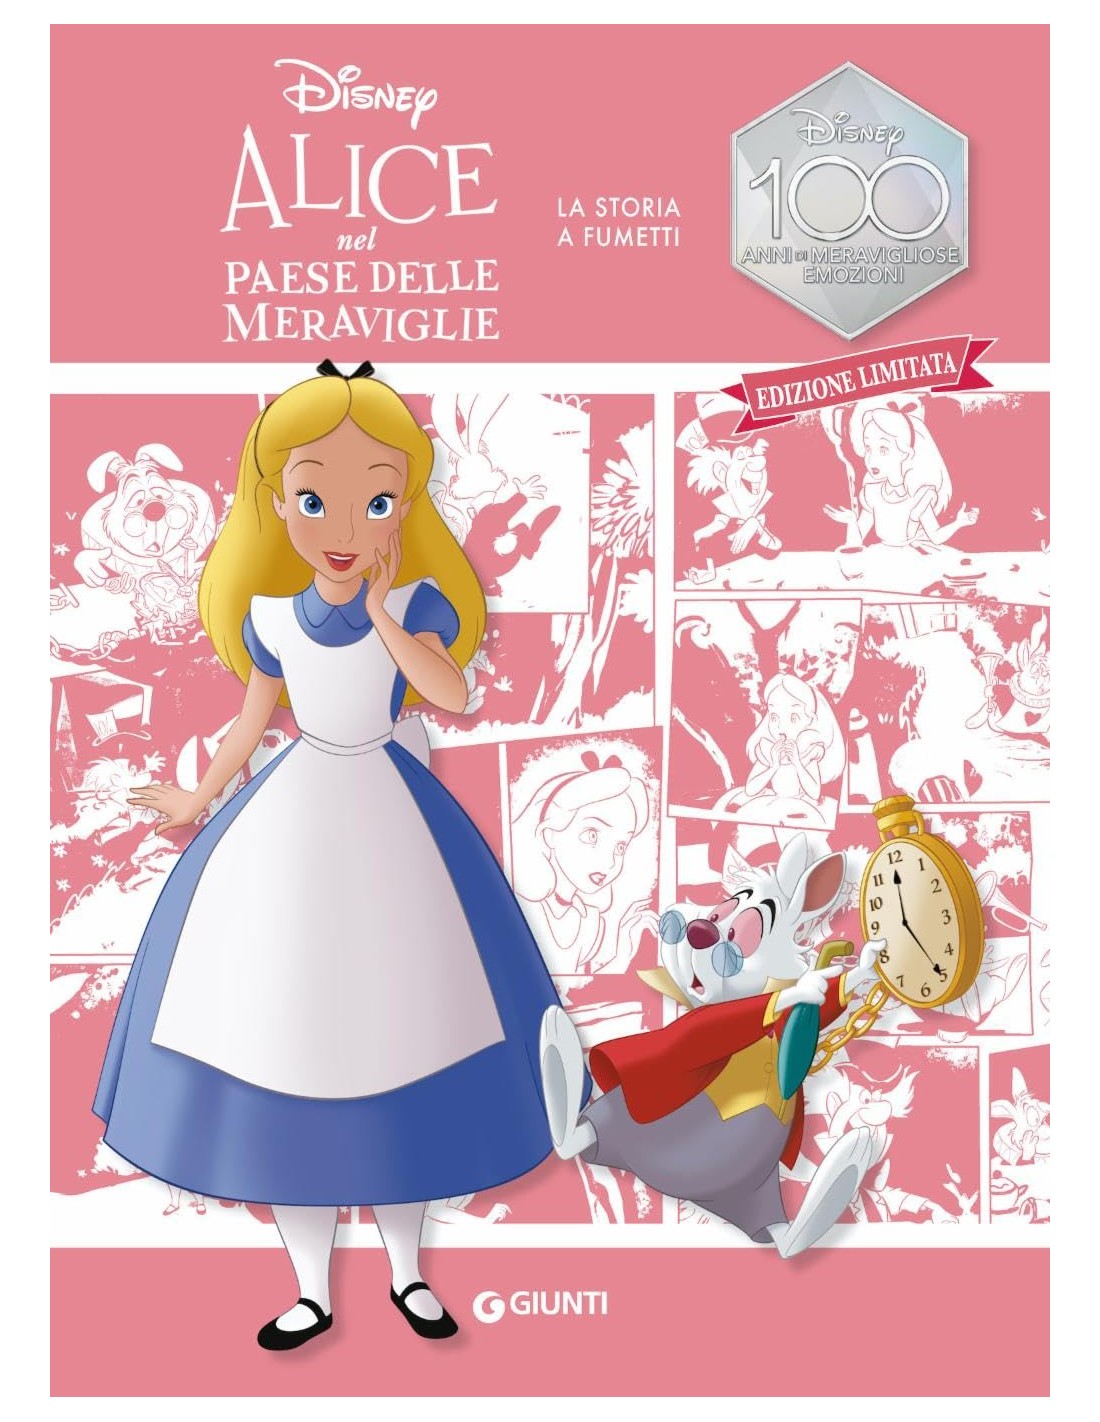 Alice nel paese delle meraviglie La storia a fumetti Disney 100 Ediz